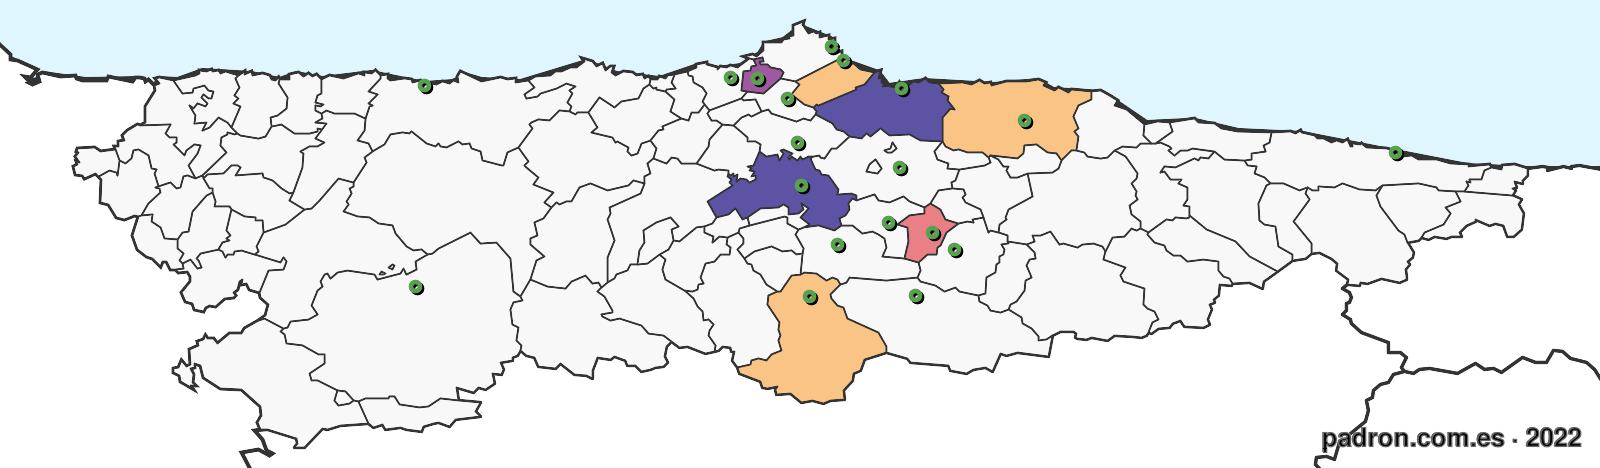 tunecinos en asturias.